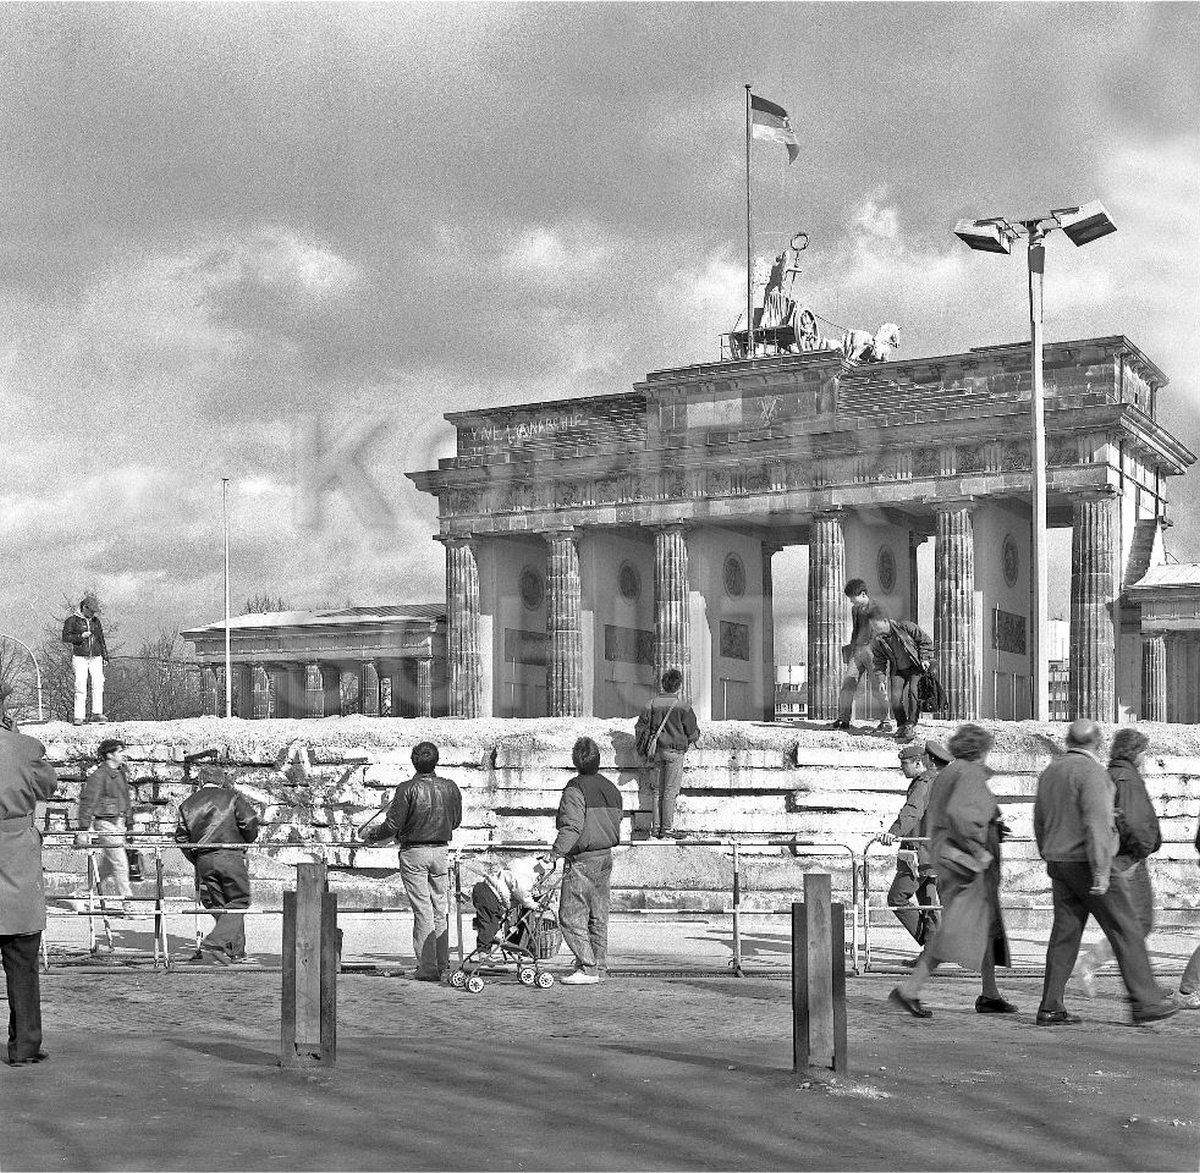 Nr03-49_5.2.1990-Brandenburger-Tor-Westseite-